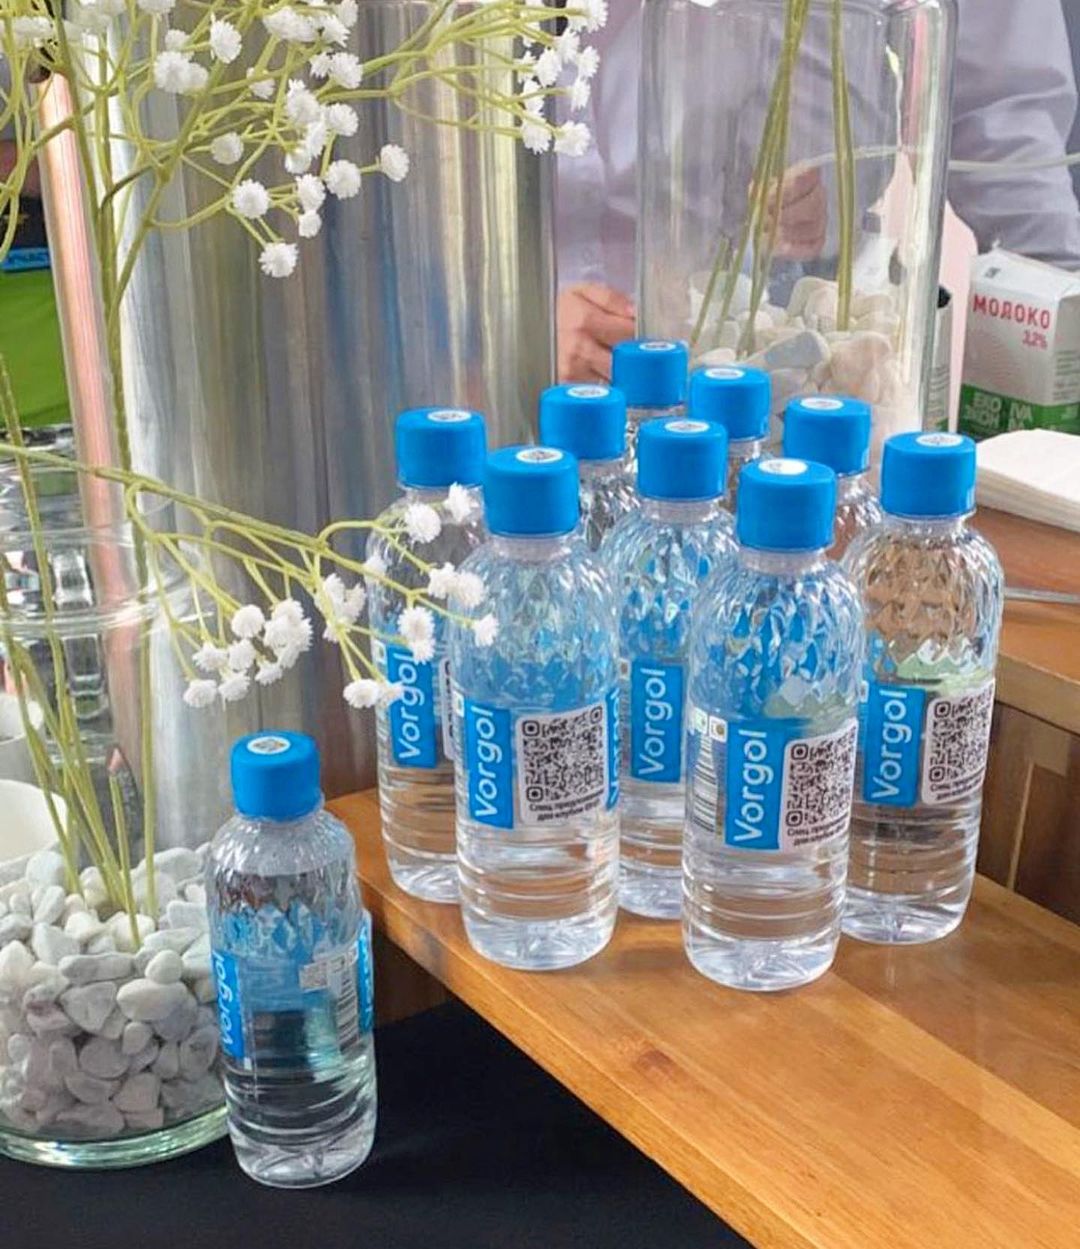 Природная вода Vorgol – официальный партнёр выставки ПИР ЭКСПО 2023.